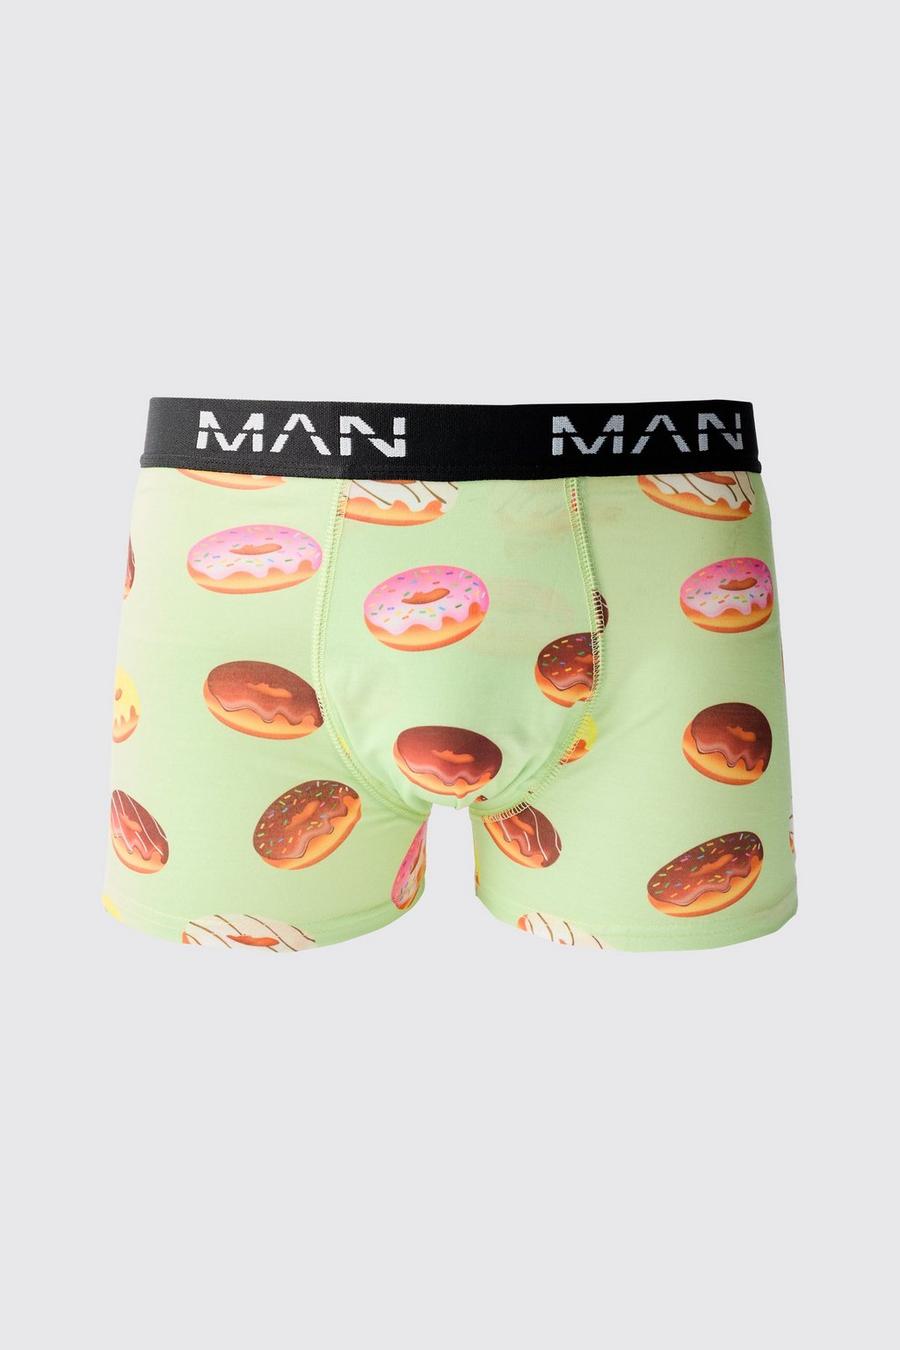 Multi Man Donut Printed Boxers